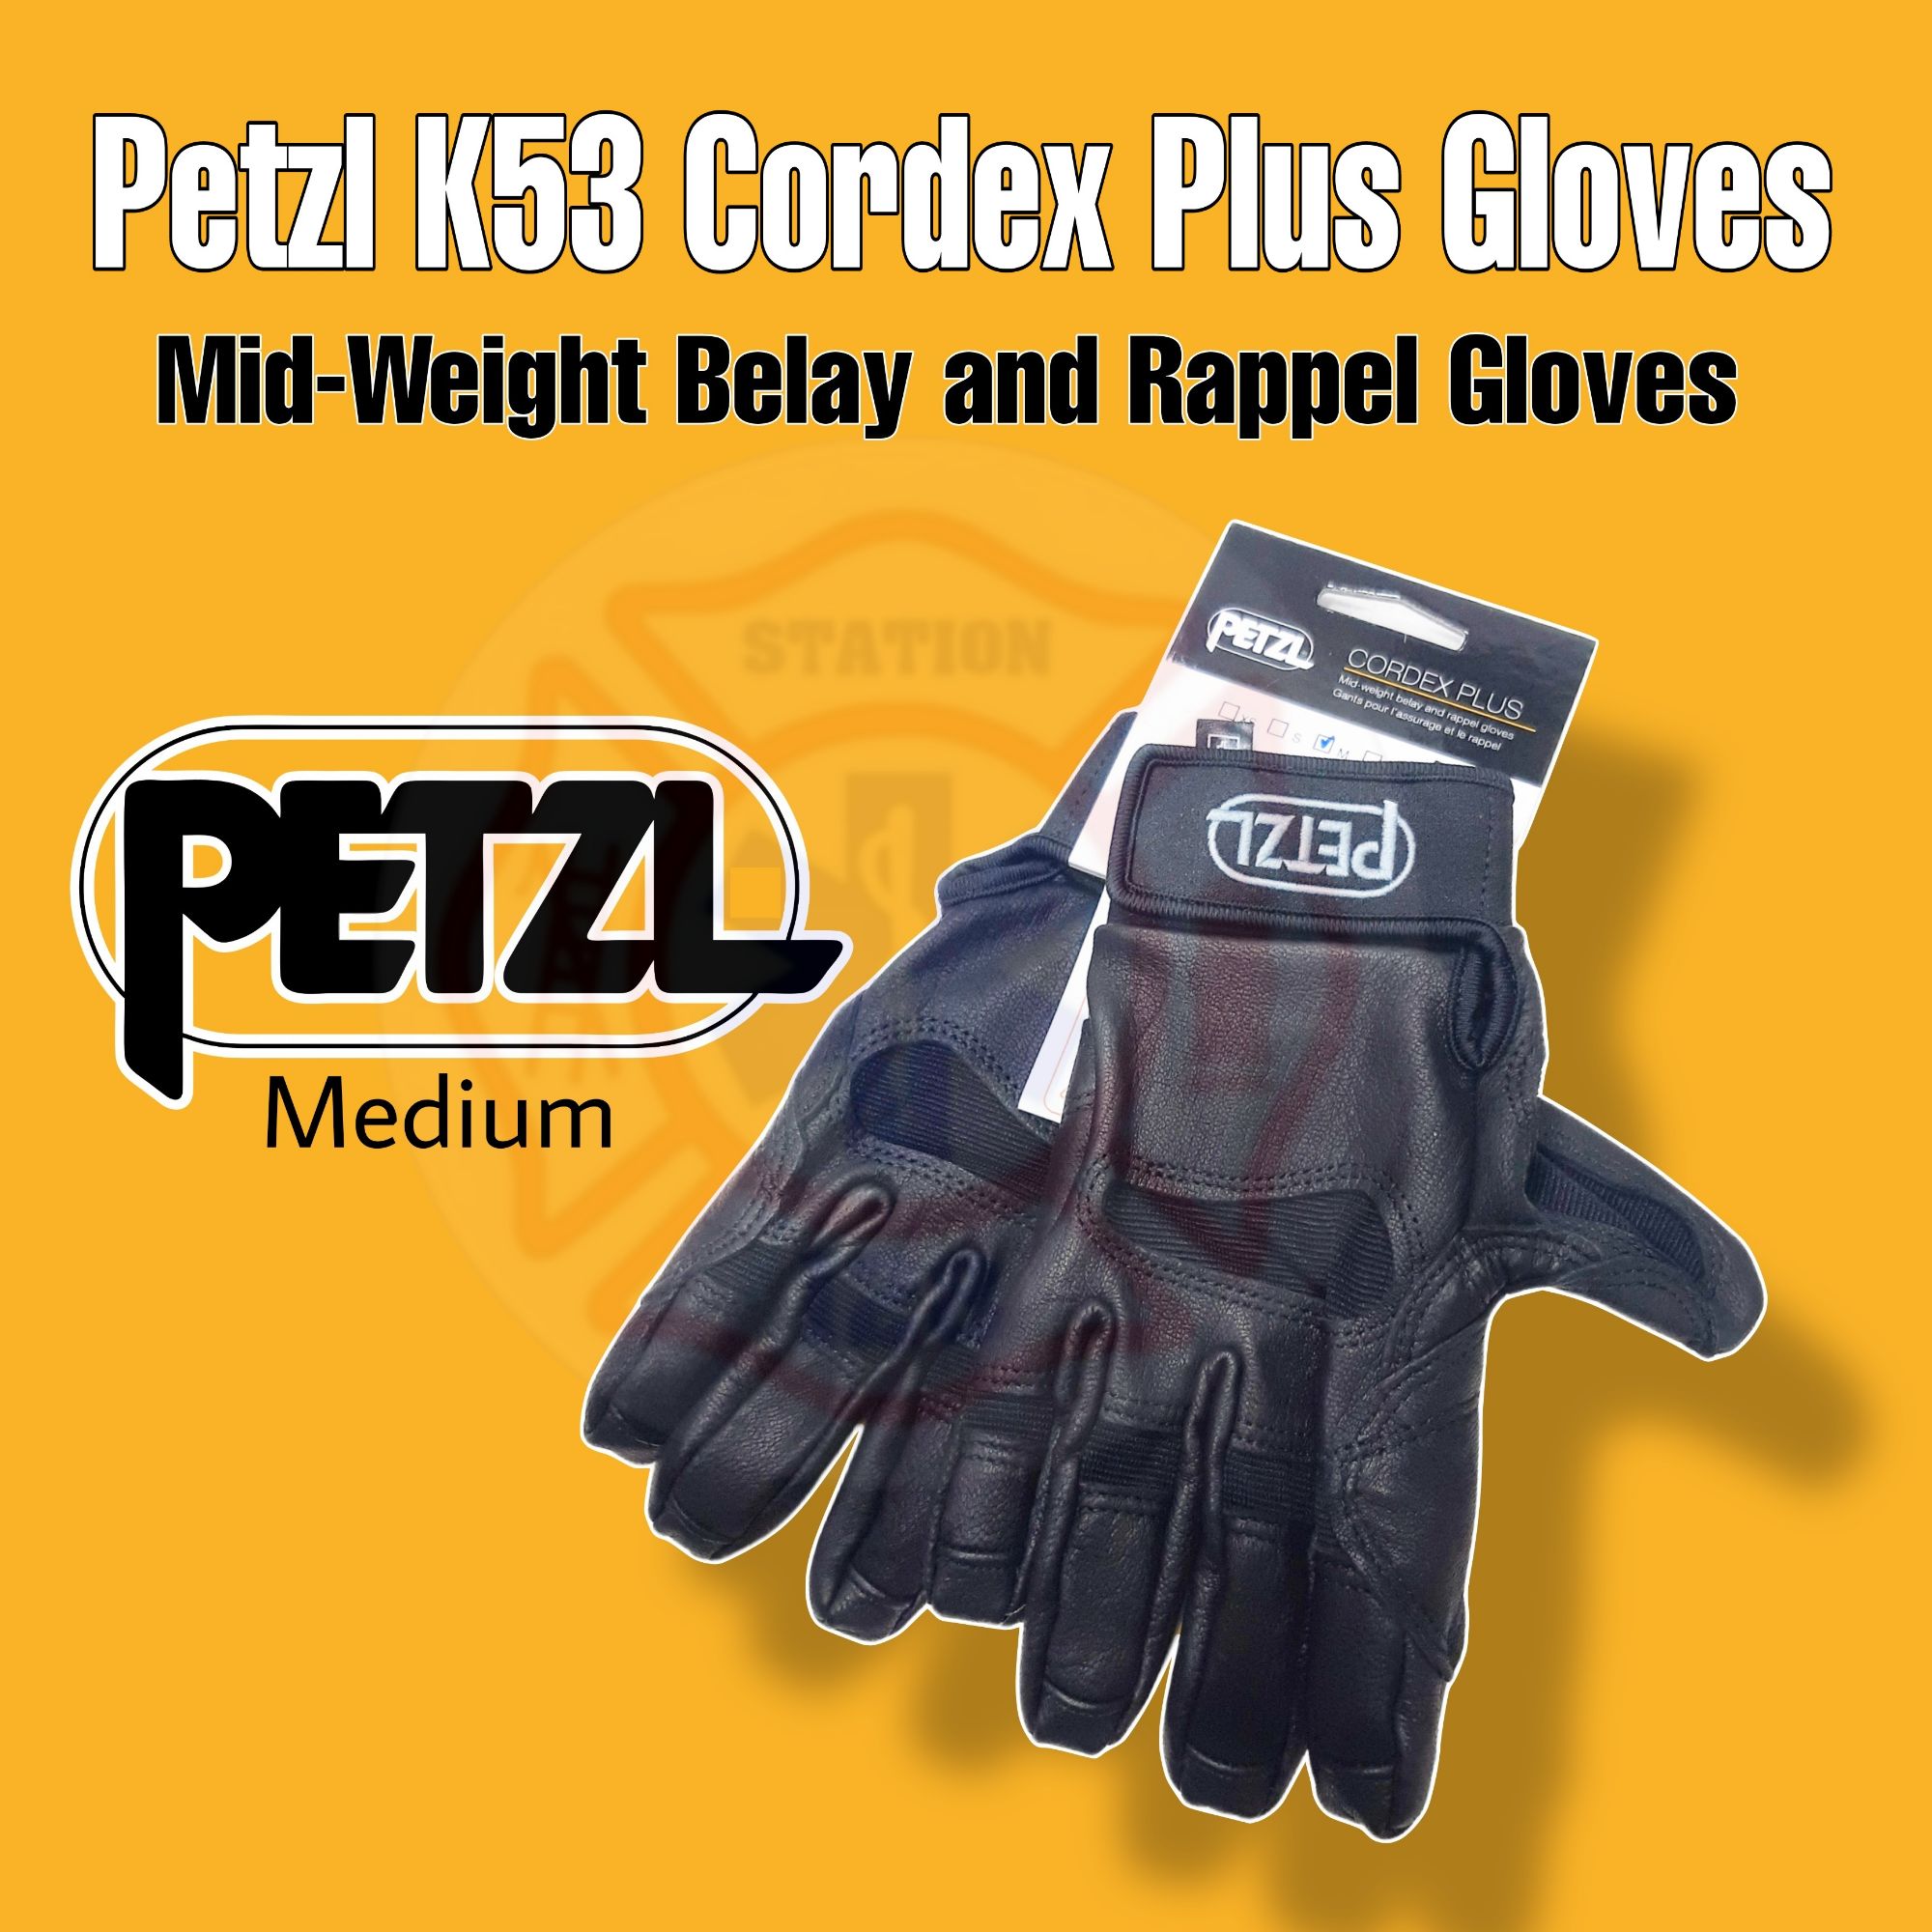 CORDEX, Lightweight belay/rappel gloves - Petzl USA